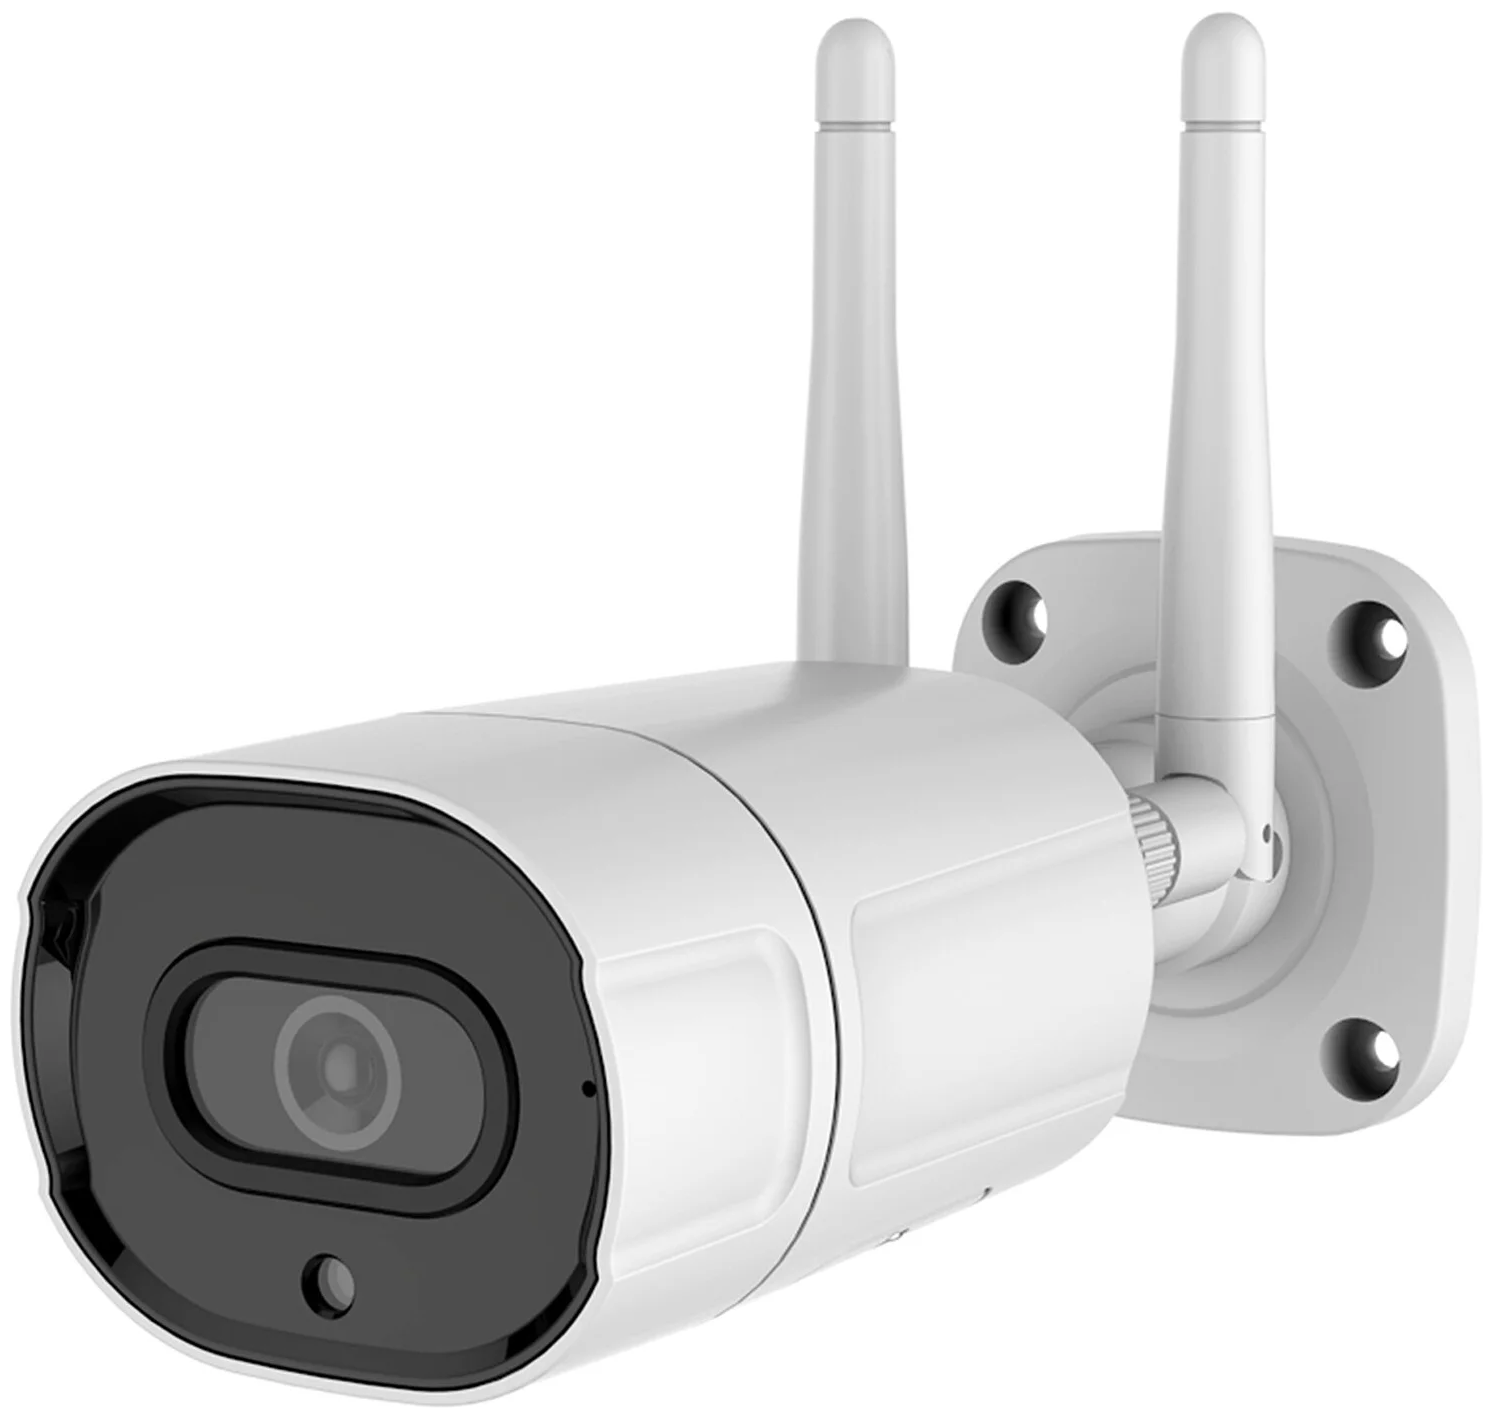 Уличная беспроводная 4G камера видеонаблюдения IP4-421 (1080P)